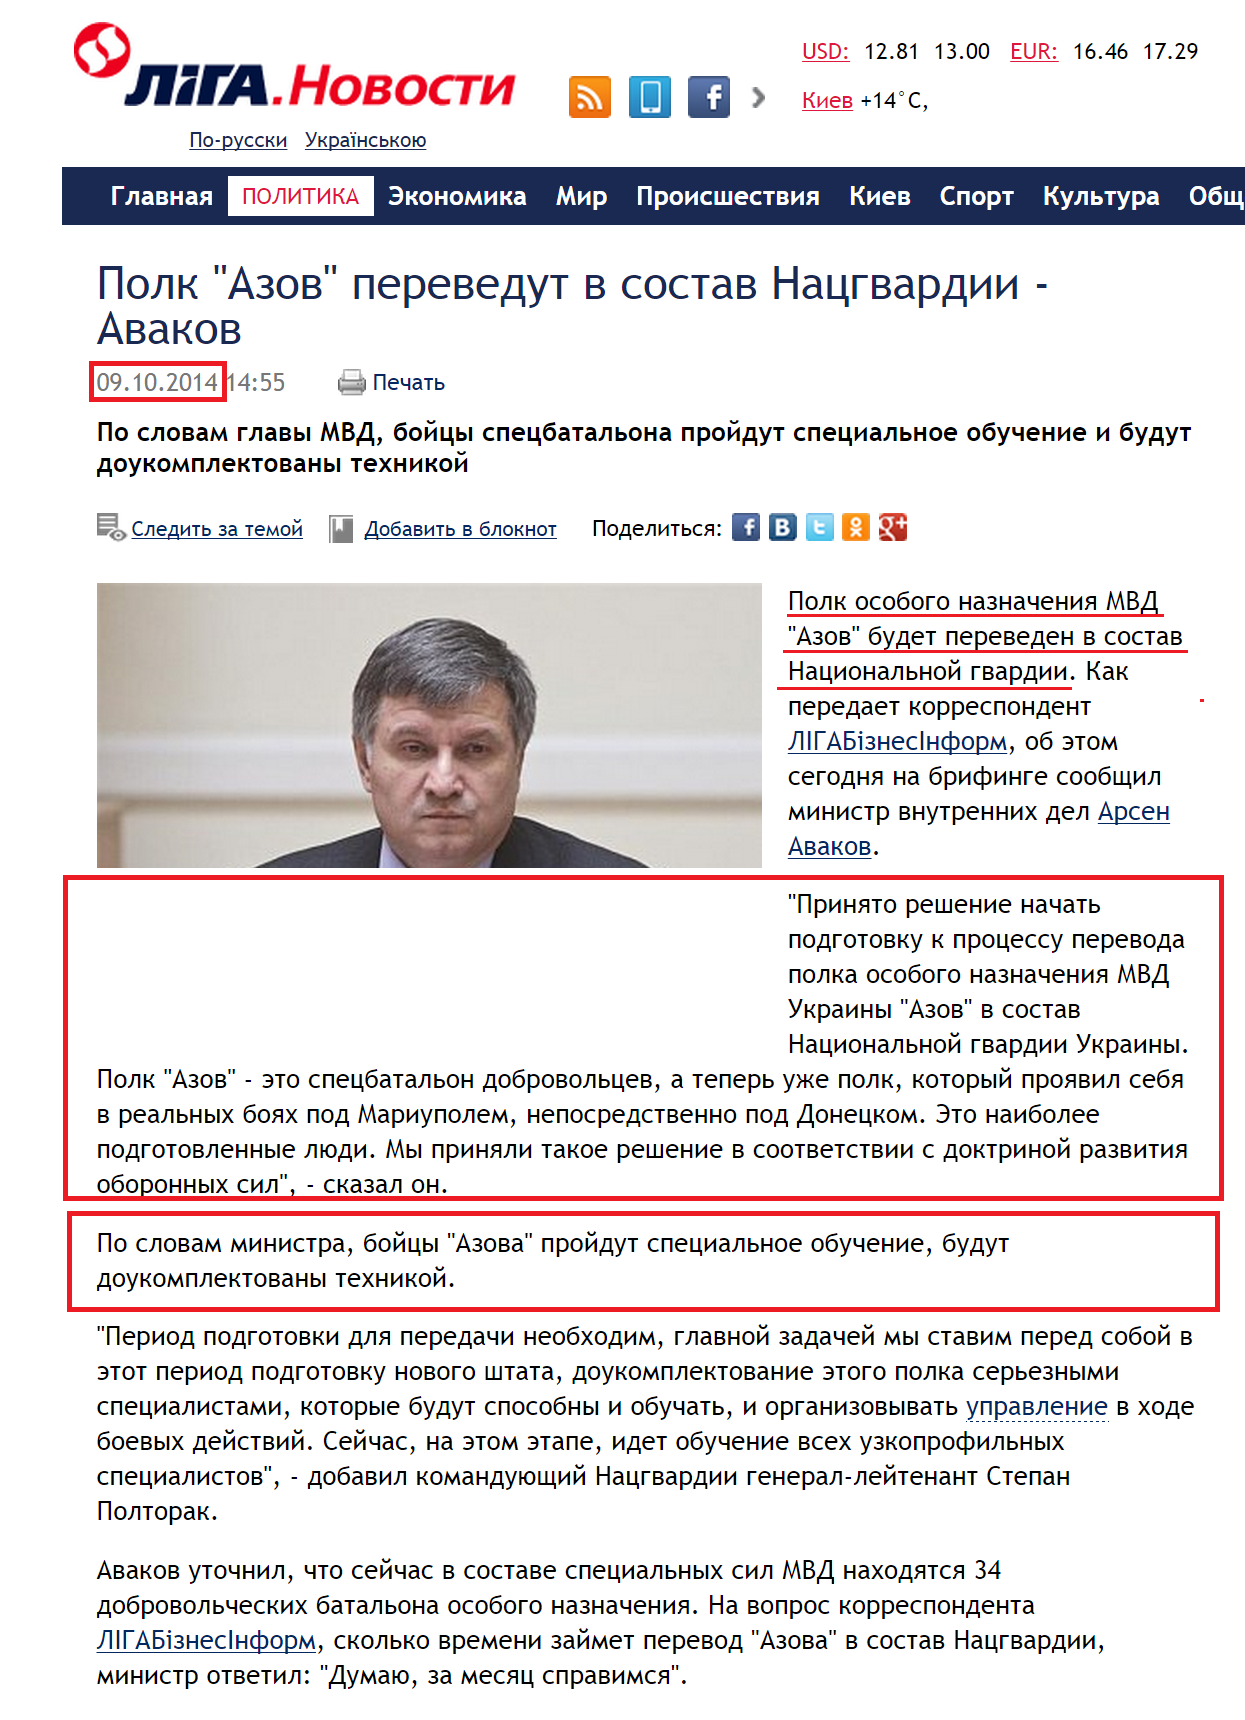 http://news.liga.net/news/politics/3604672-polk_azov_perevedut_v_sostav_natsgvardii_avakov.htm